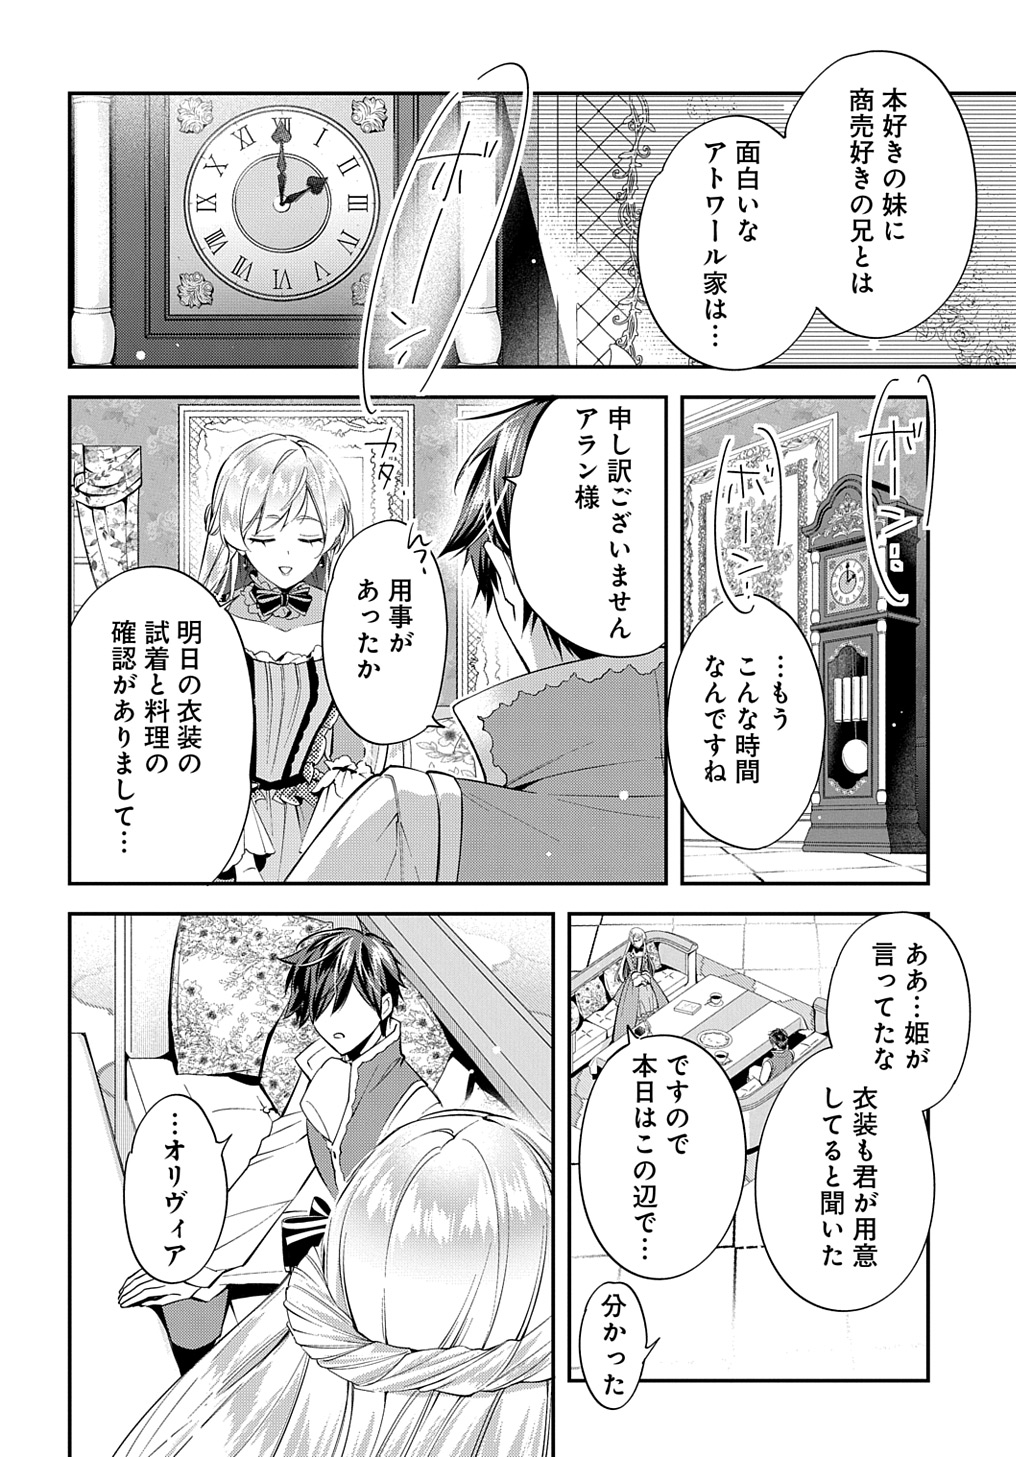 Outaishi ni Konyaku Hakisareta no de, Mou Baka no Furi wa Yameyou to Omoimasu - Chapter 21 - Page 14